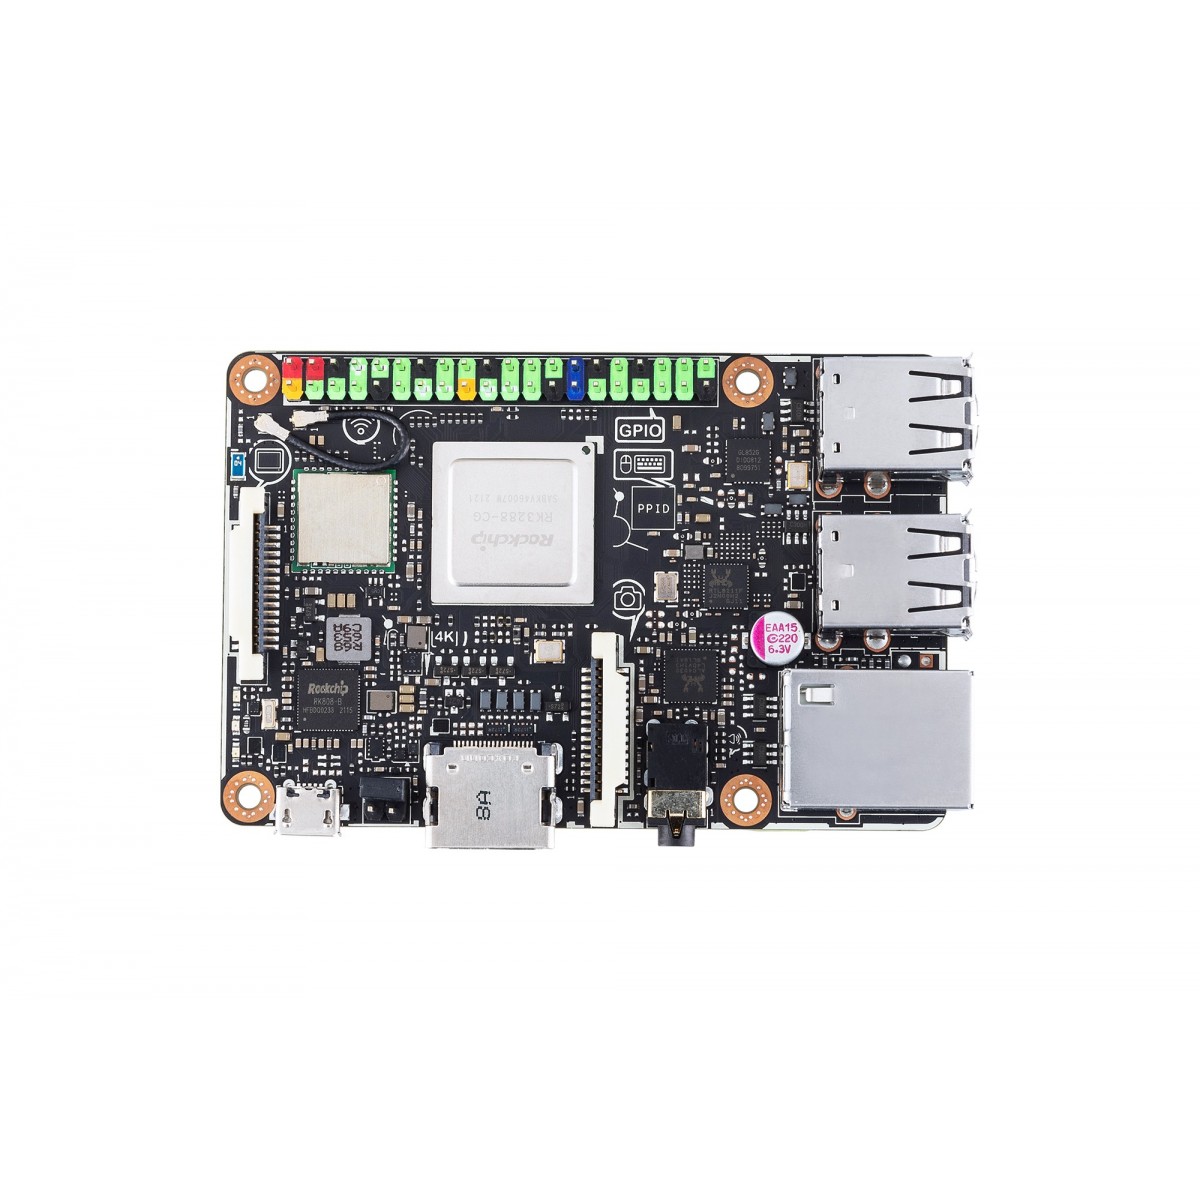 ASUS Tinker Board R2.0 - Rockchip - Rockchip RK3288 - 2 GB - DDR3-SDRAM - Dual-channel - MicroSD (TransFlash)